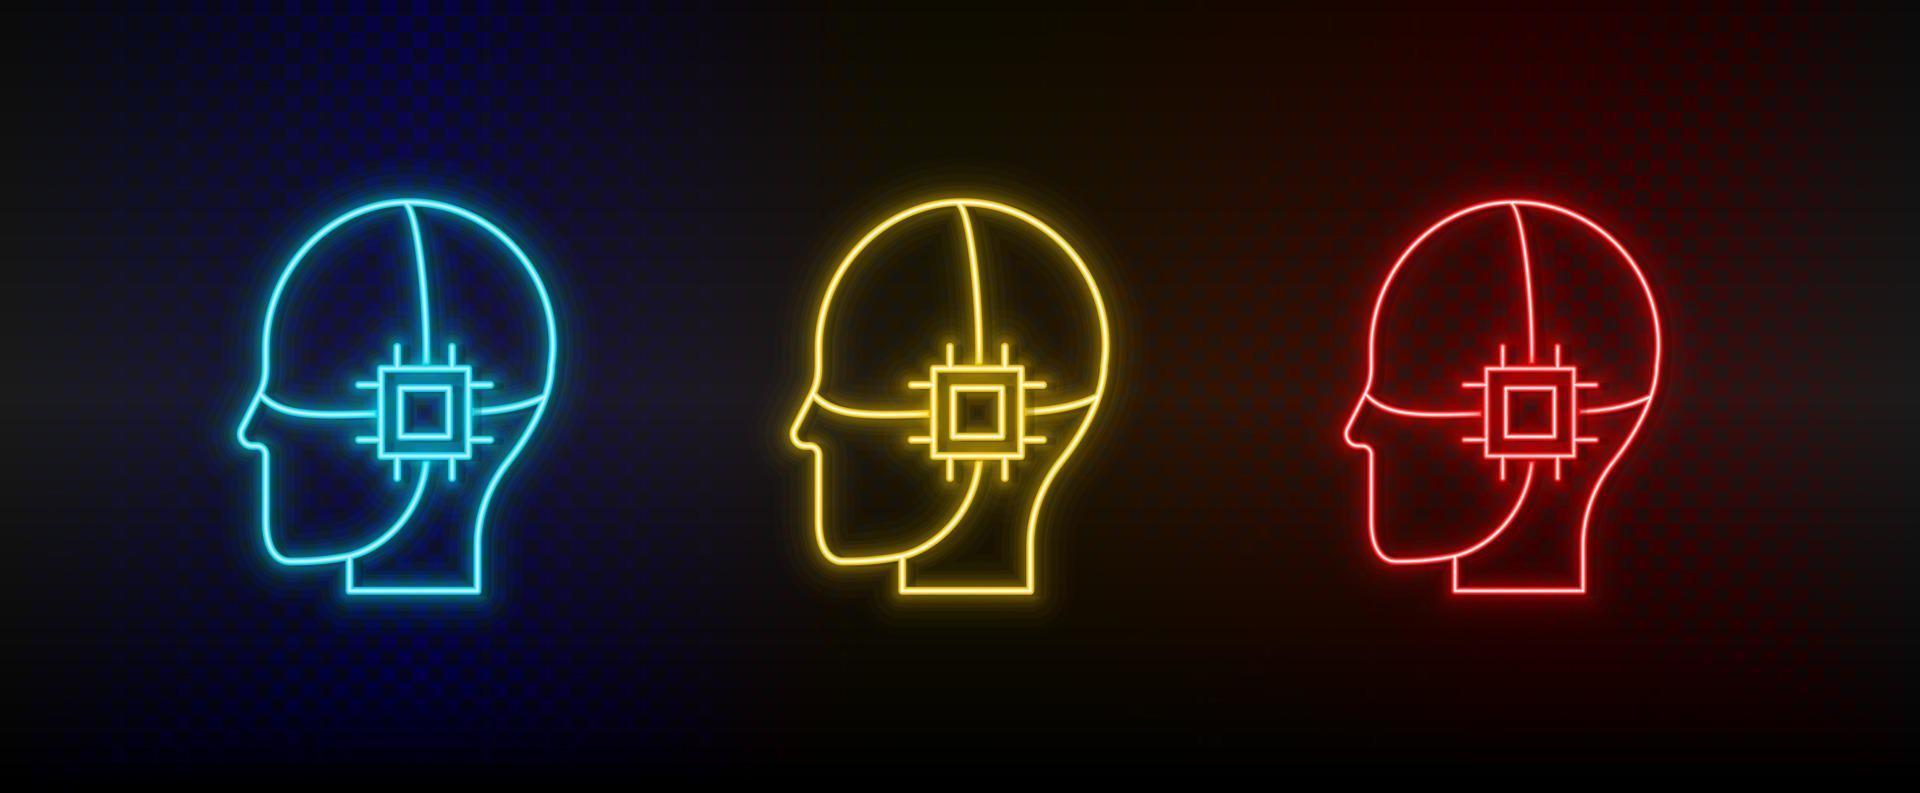 iconos de neón. conducir el chip cerebral de inteligencia interna. conjunto de icono de vector de neón rojo, azul, amarillo sobre fondo oscuro